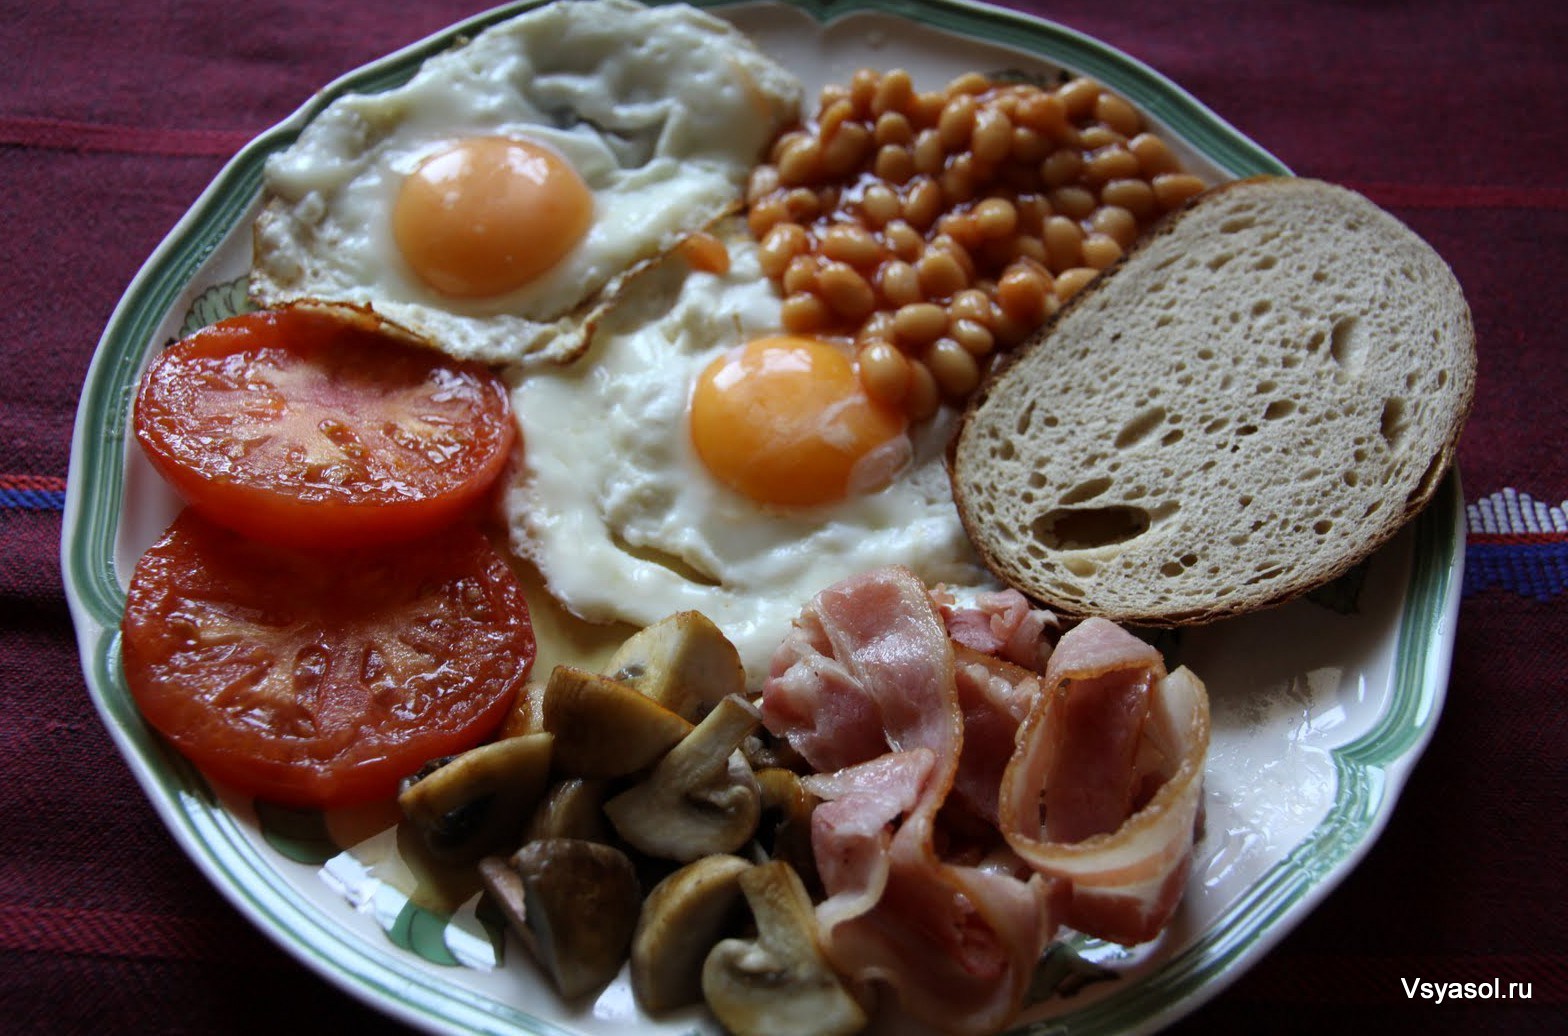 Завтрак Английский 2, порция общепит